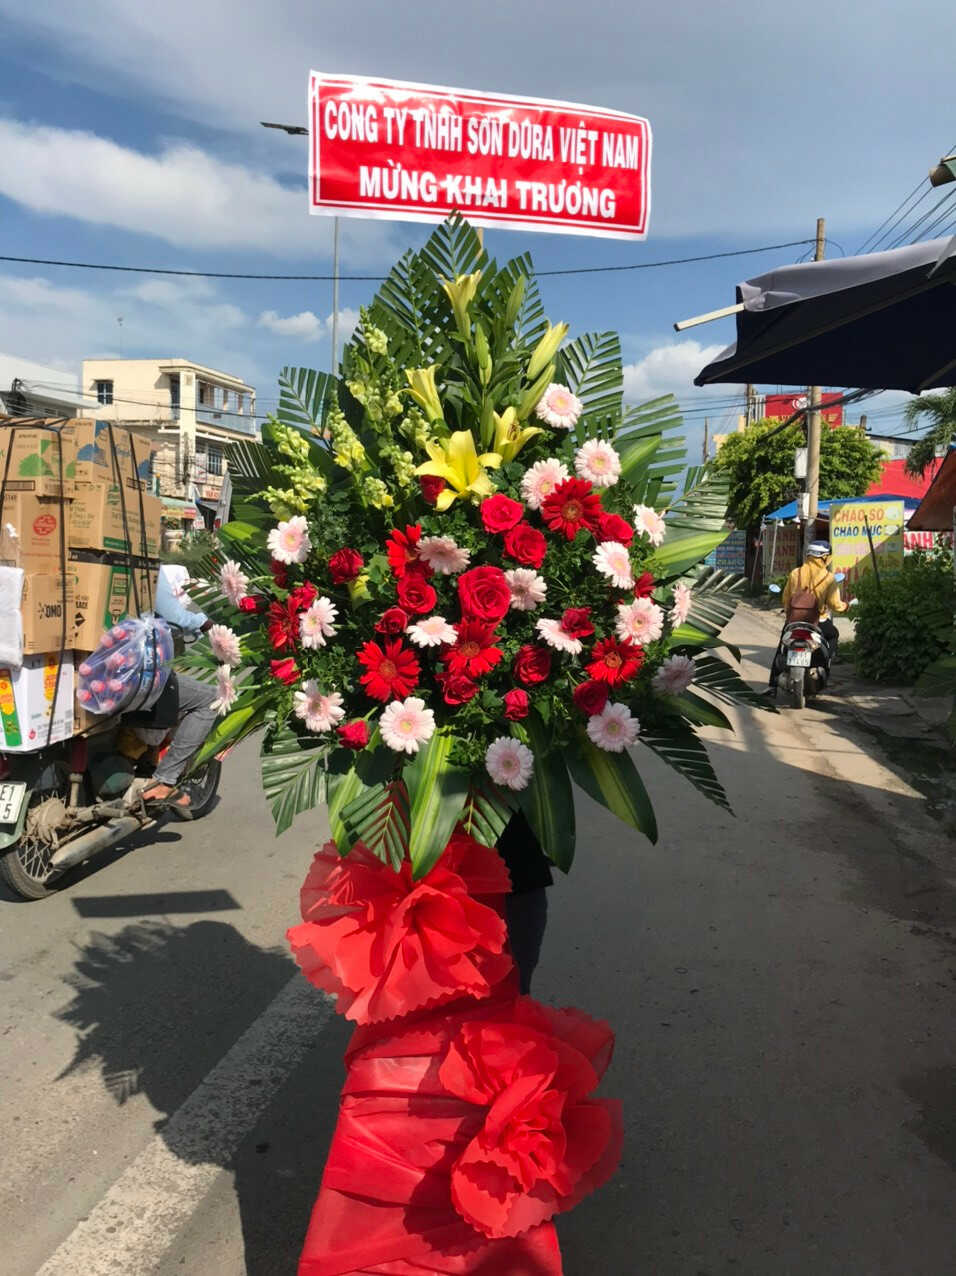 Mẫu Hoa khai trương tại điện hoa Mỹ Đức, Hà Nội